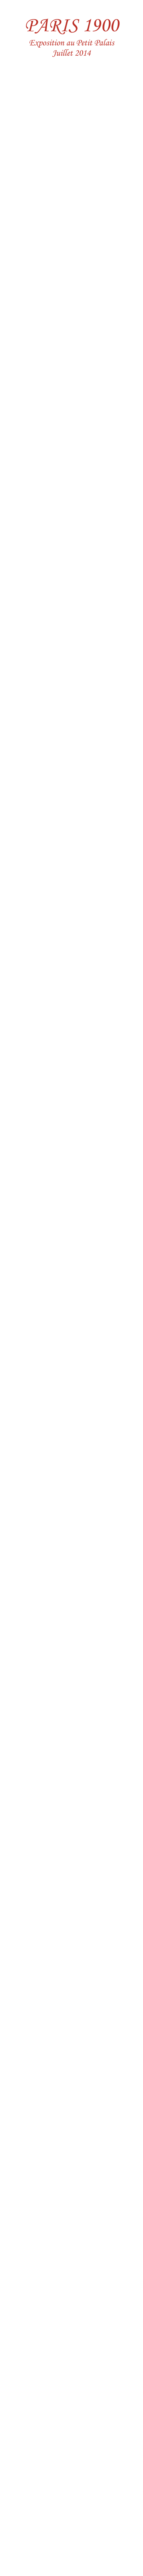 

PARIS 1900
Exposition au Petit Palais  Juillet 2014
























Alfons Mucha, frise décorant le pavillon de la Bosnie-Herzegovine à l’Exposition universelle de 1900 à Paris.







Diplôme en l’honneur de la pose de la première pierre du pont Alexandre III (1896).


Signé: Nicolas II, Alexandra Feodorovna et Félix Faure.



La construction du métro.






Le dôme de Schneider      Monument à Emile Levassor


































retour à: Paris 2006 -2014
retour à l’accueil